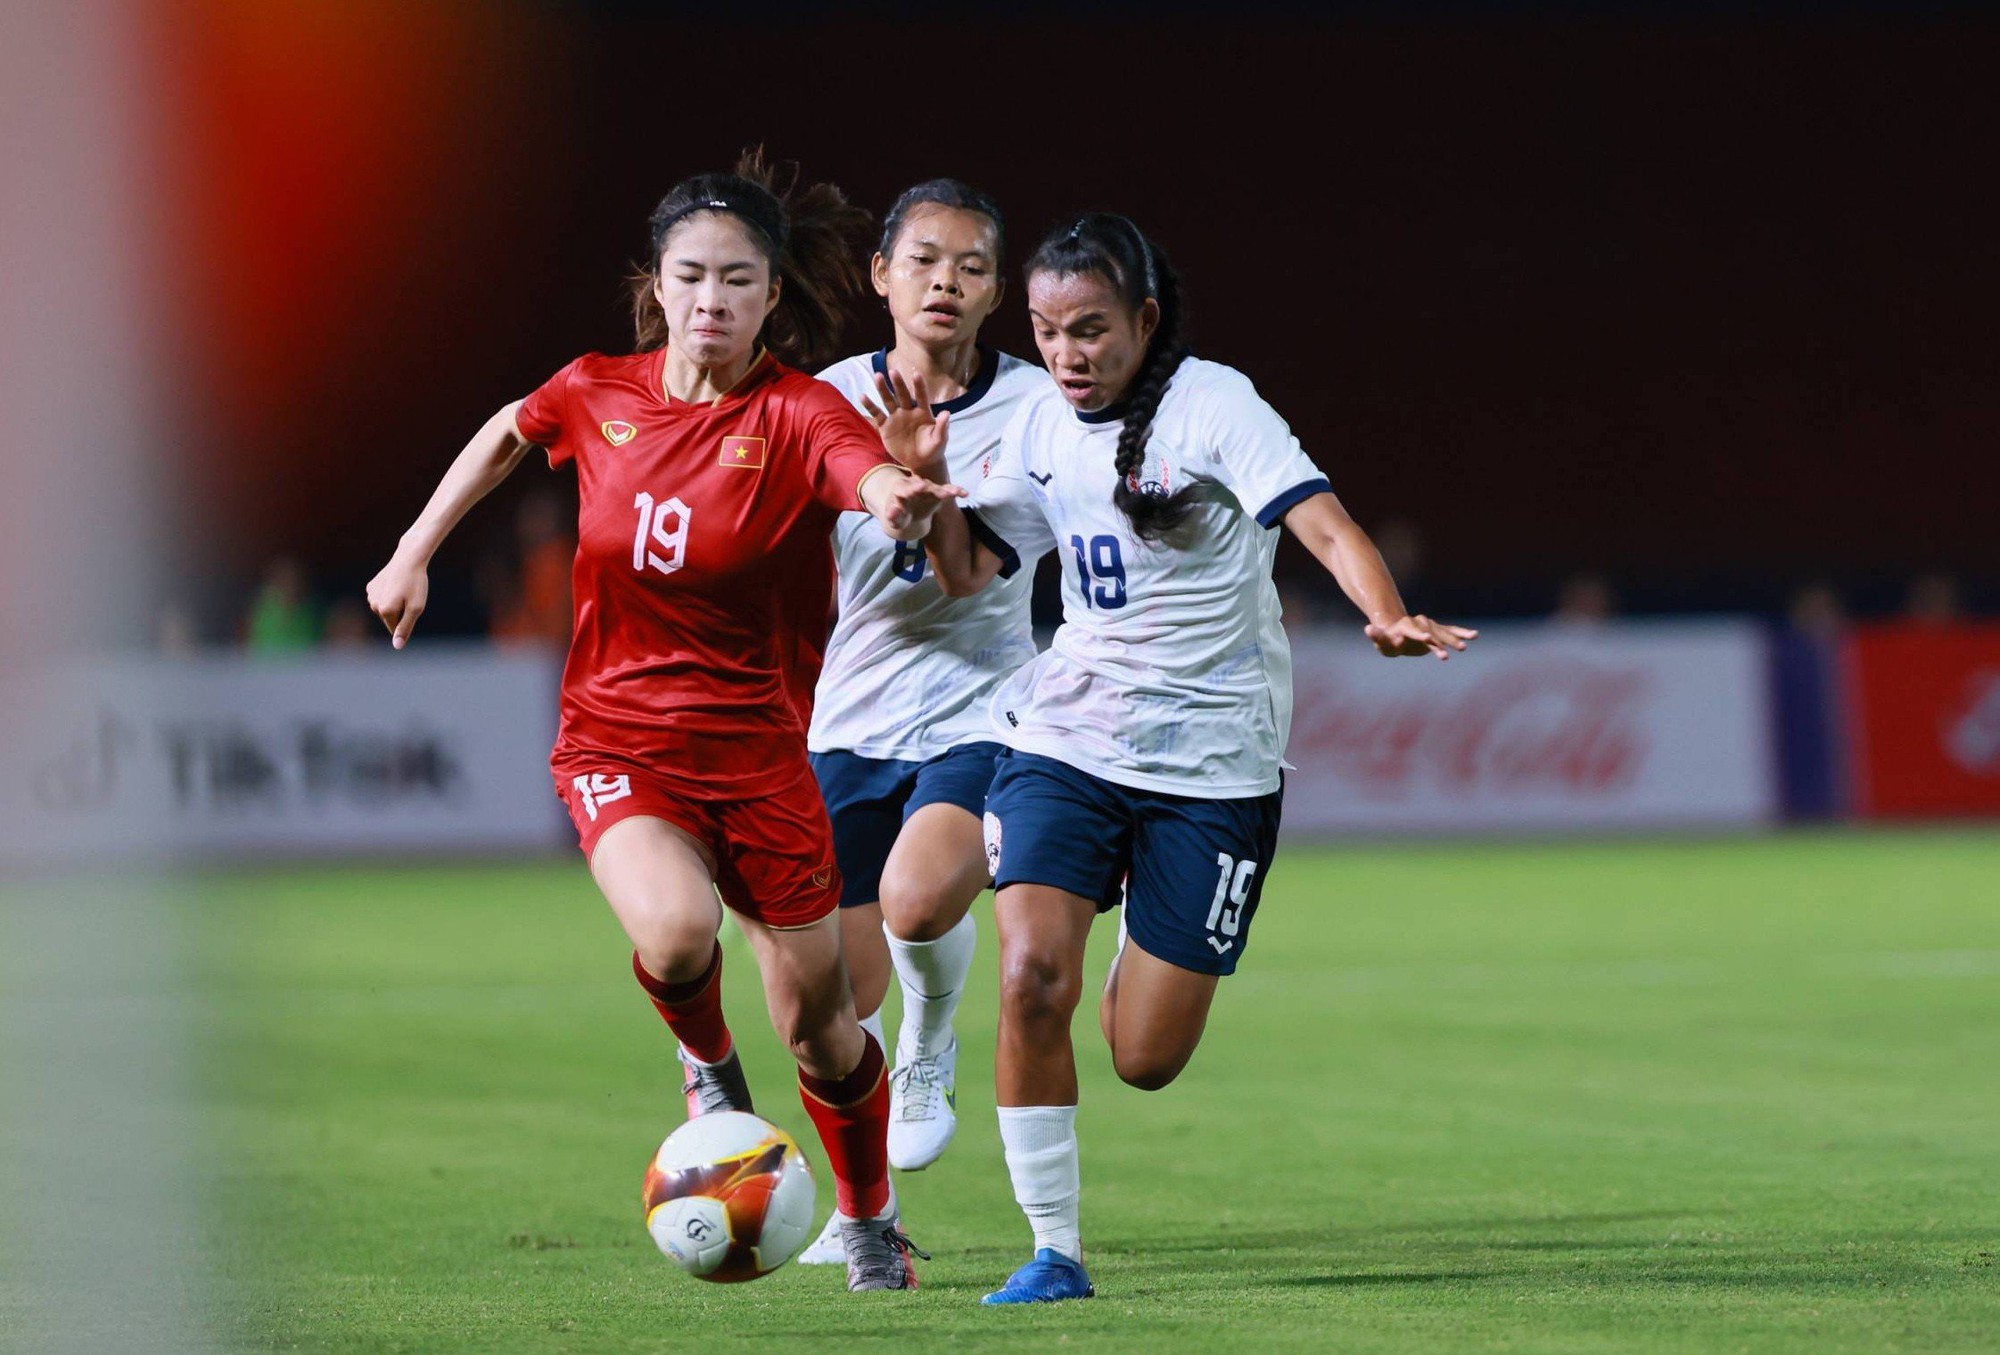 Thú vị những ứng viên ghi bàn cho đội tuyển nữ Việt Nam tại World Cup - Ảnh 3.